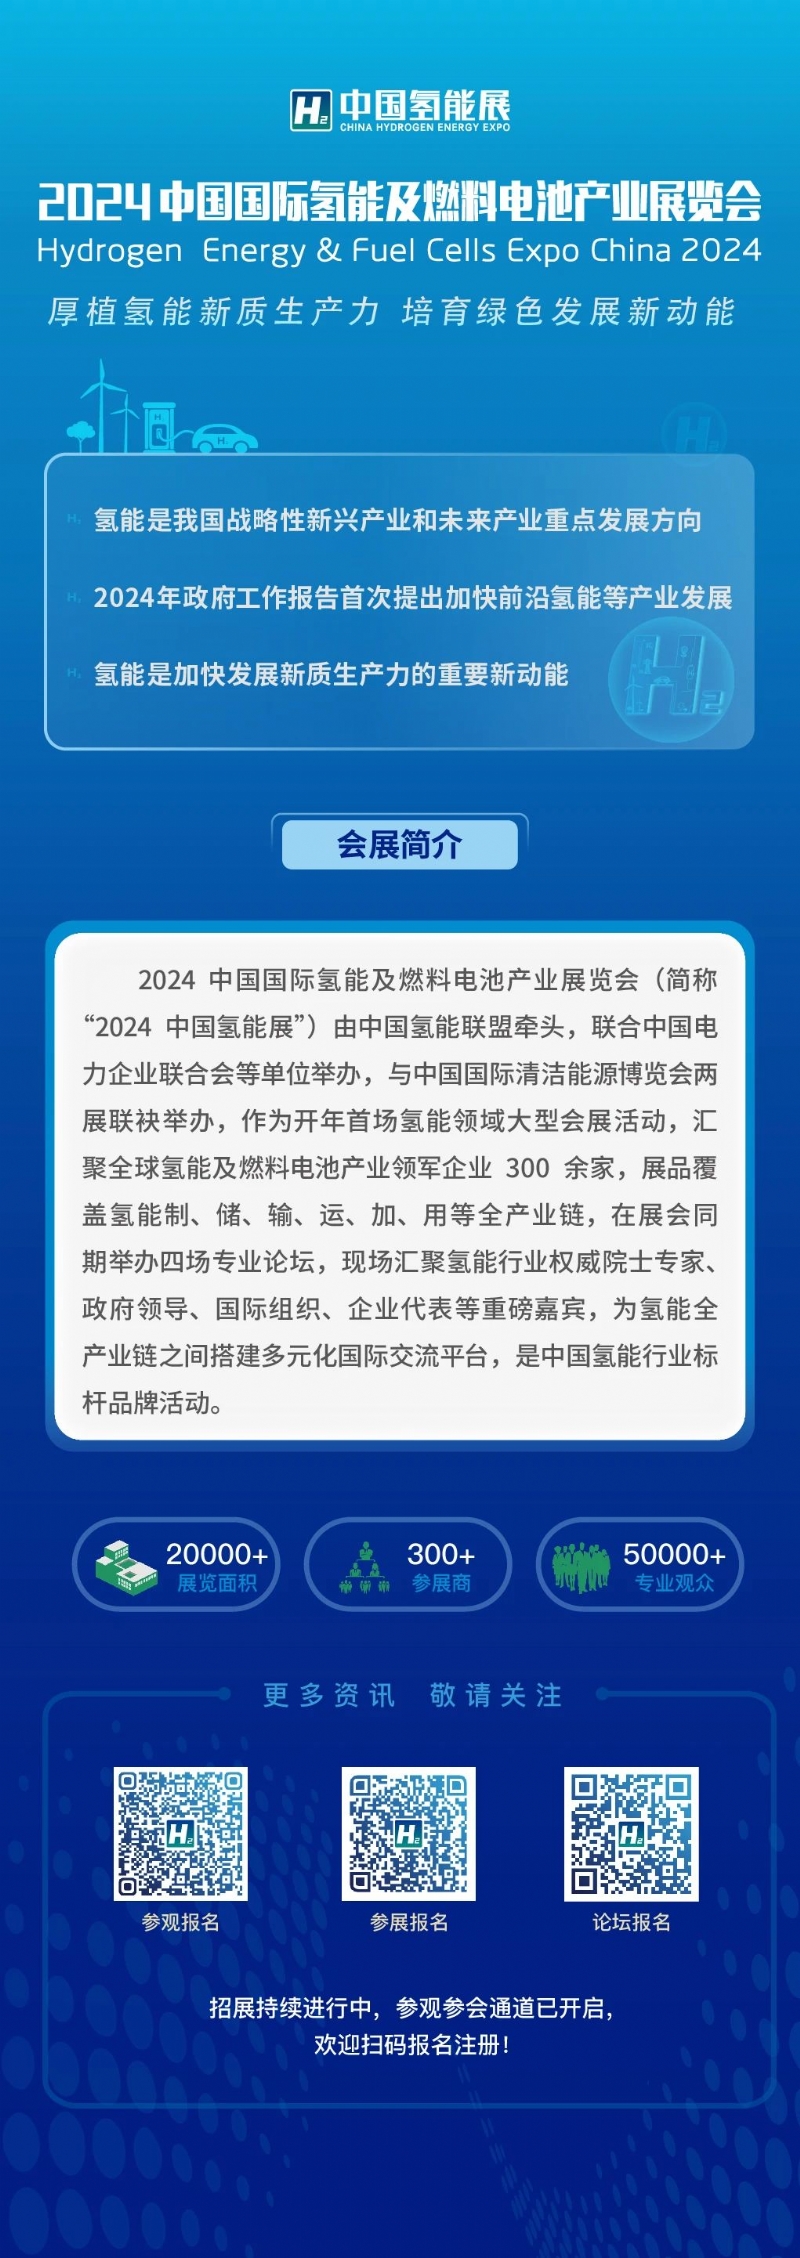 2024中国国际氢能及燃料电池产业展览会 即将举办……